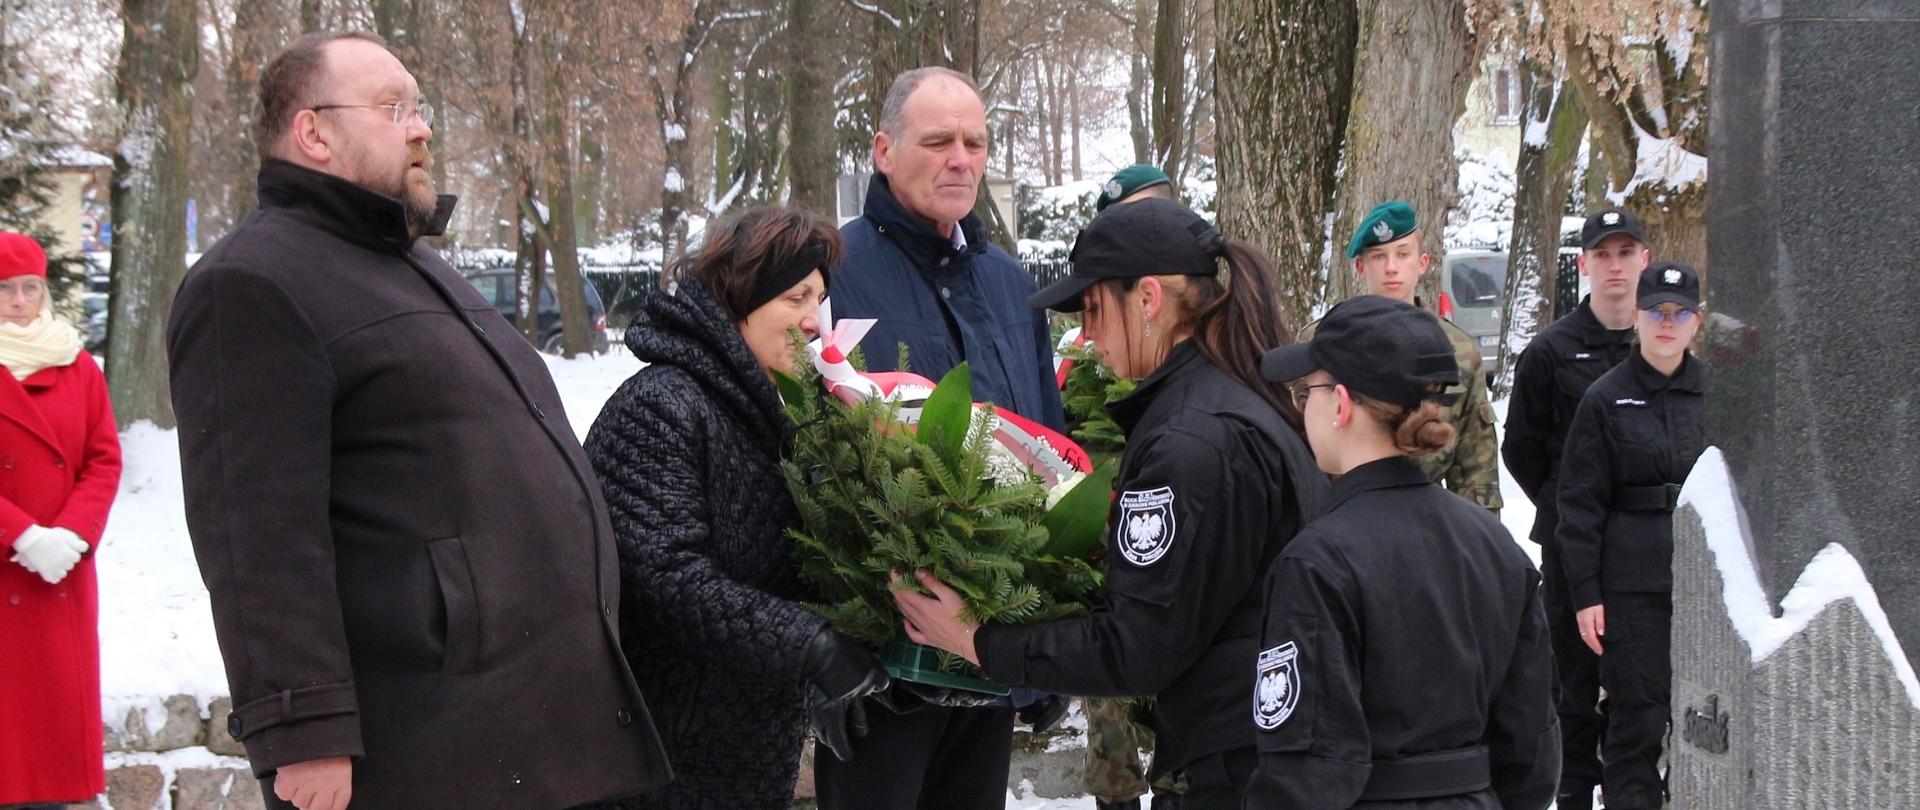 Moment Złożenia kwiatów pod pomnikiem przez Władze Powiatu Sokołowskiego. Starosta Elżbieta Sadowska przekazuje wieniec uczennicom w mundurach, które za chwilę ułożą go pod pomnikiem.